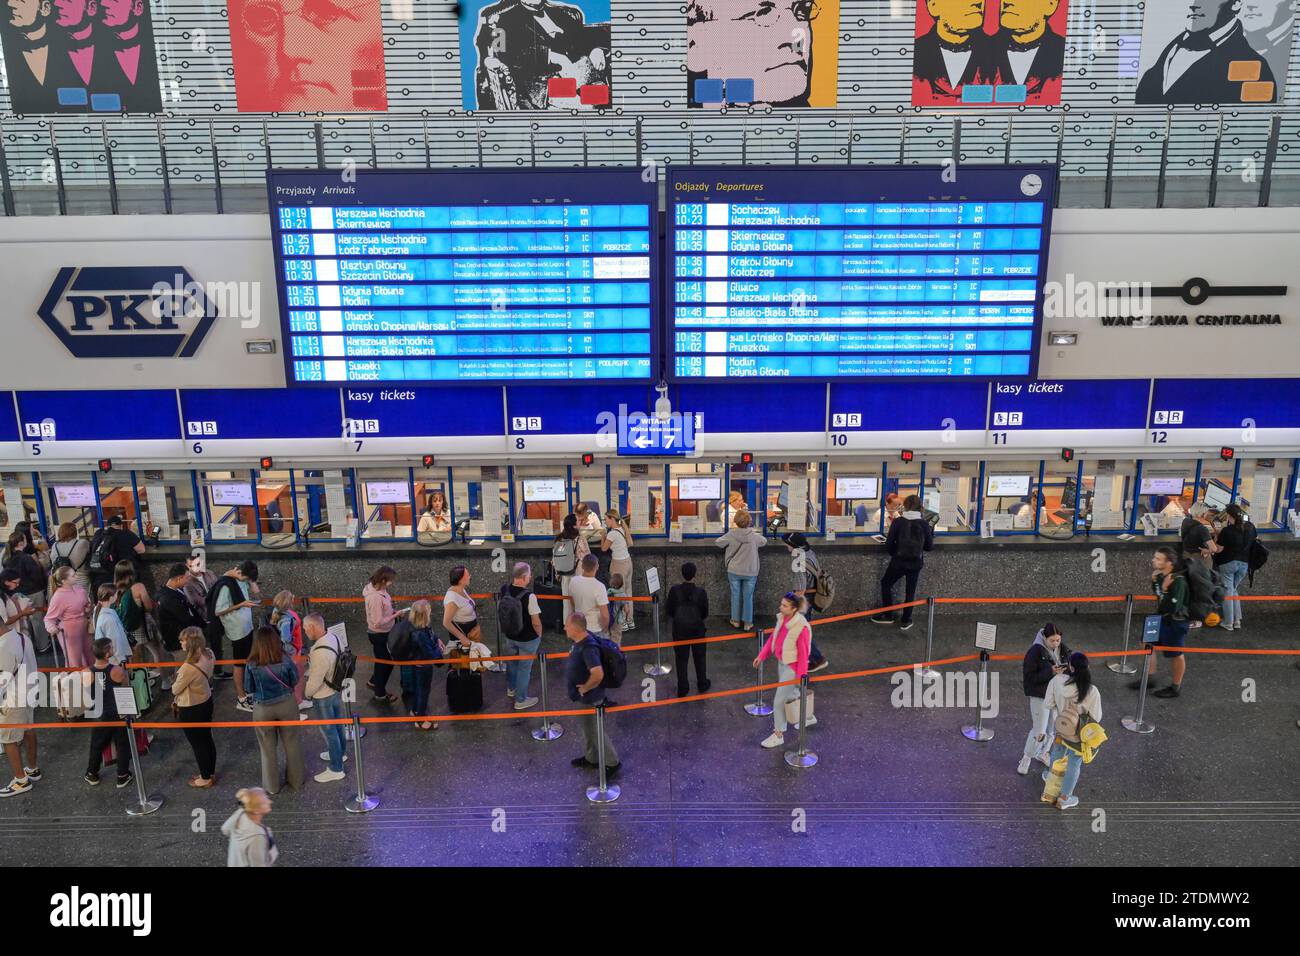 Ticketschalter, Haupthalle, Passagiere, Hauptbahnhof Warszawa Centralna, Warschau, Woiwodschaft Masowien, Polen Stock Photo